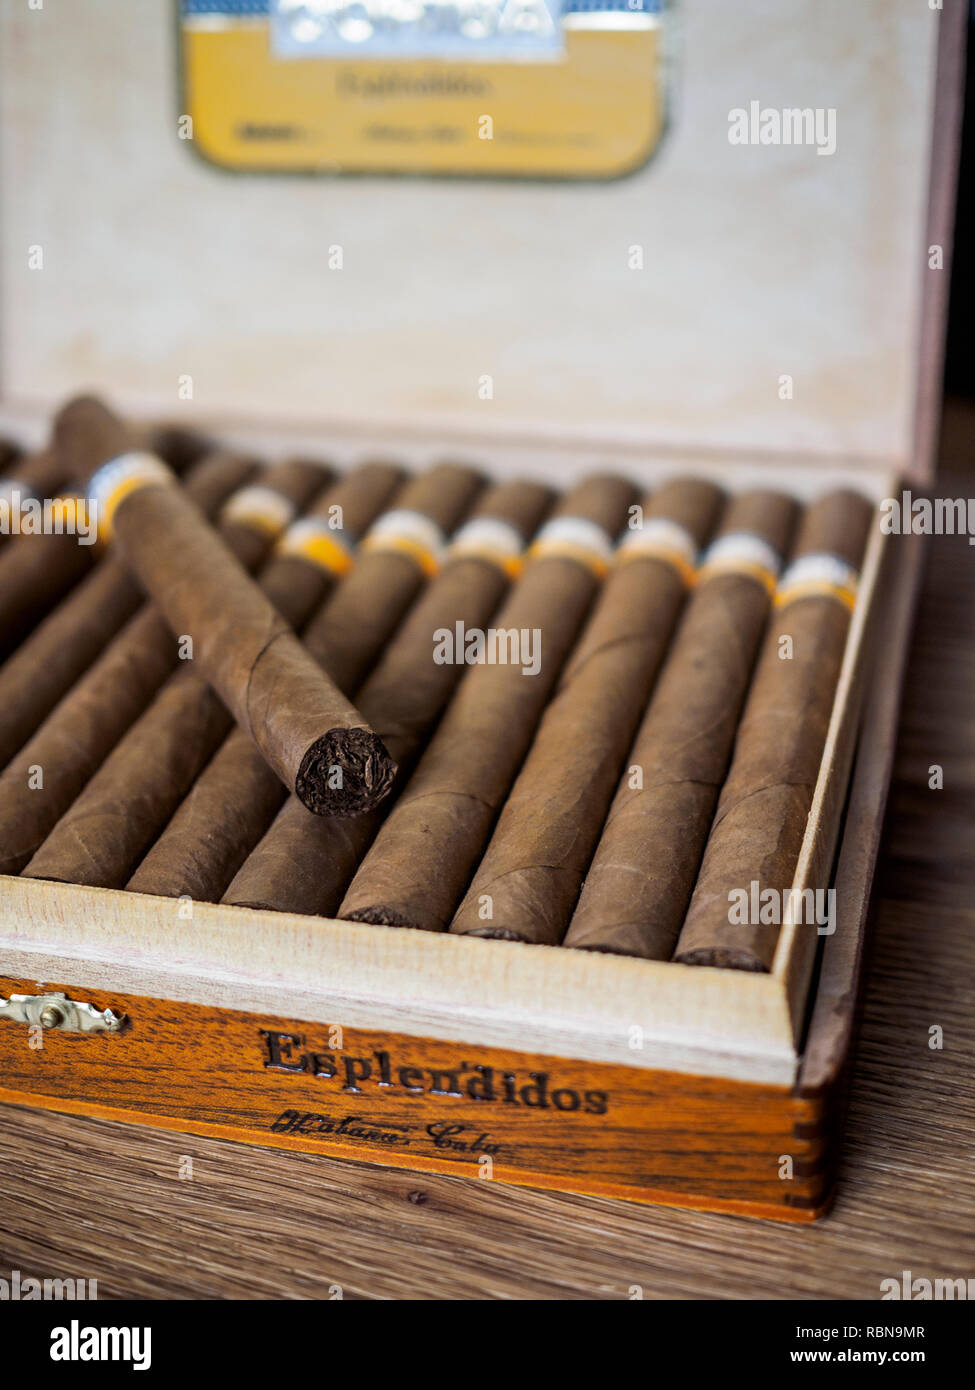 Cigar Box mit Esplendios Cohiba Zigarren, Hand in Kuba Stockfotografie -  Alamy